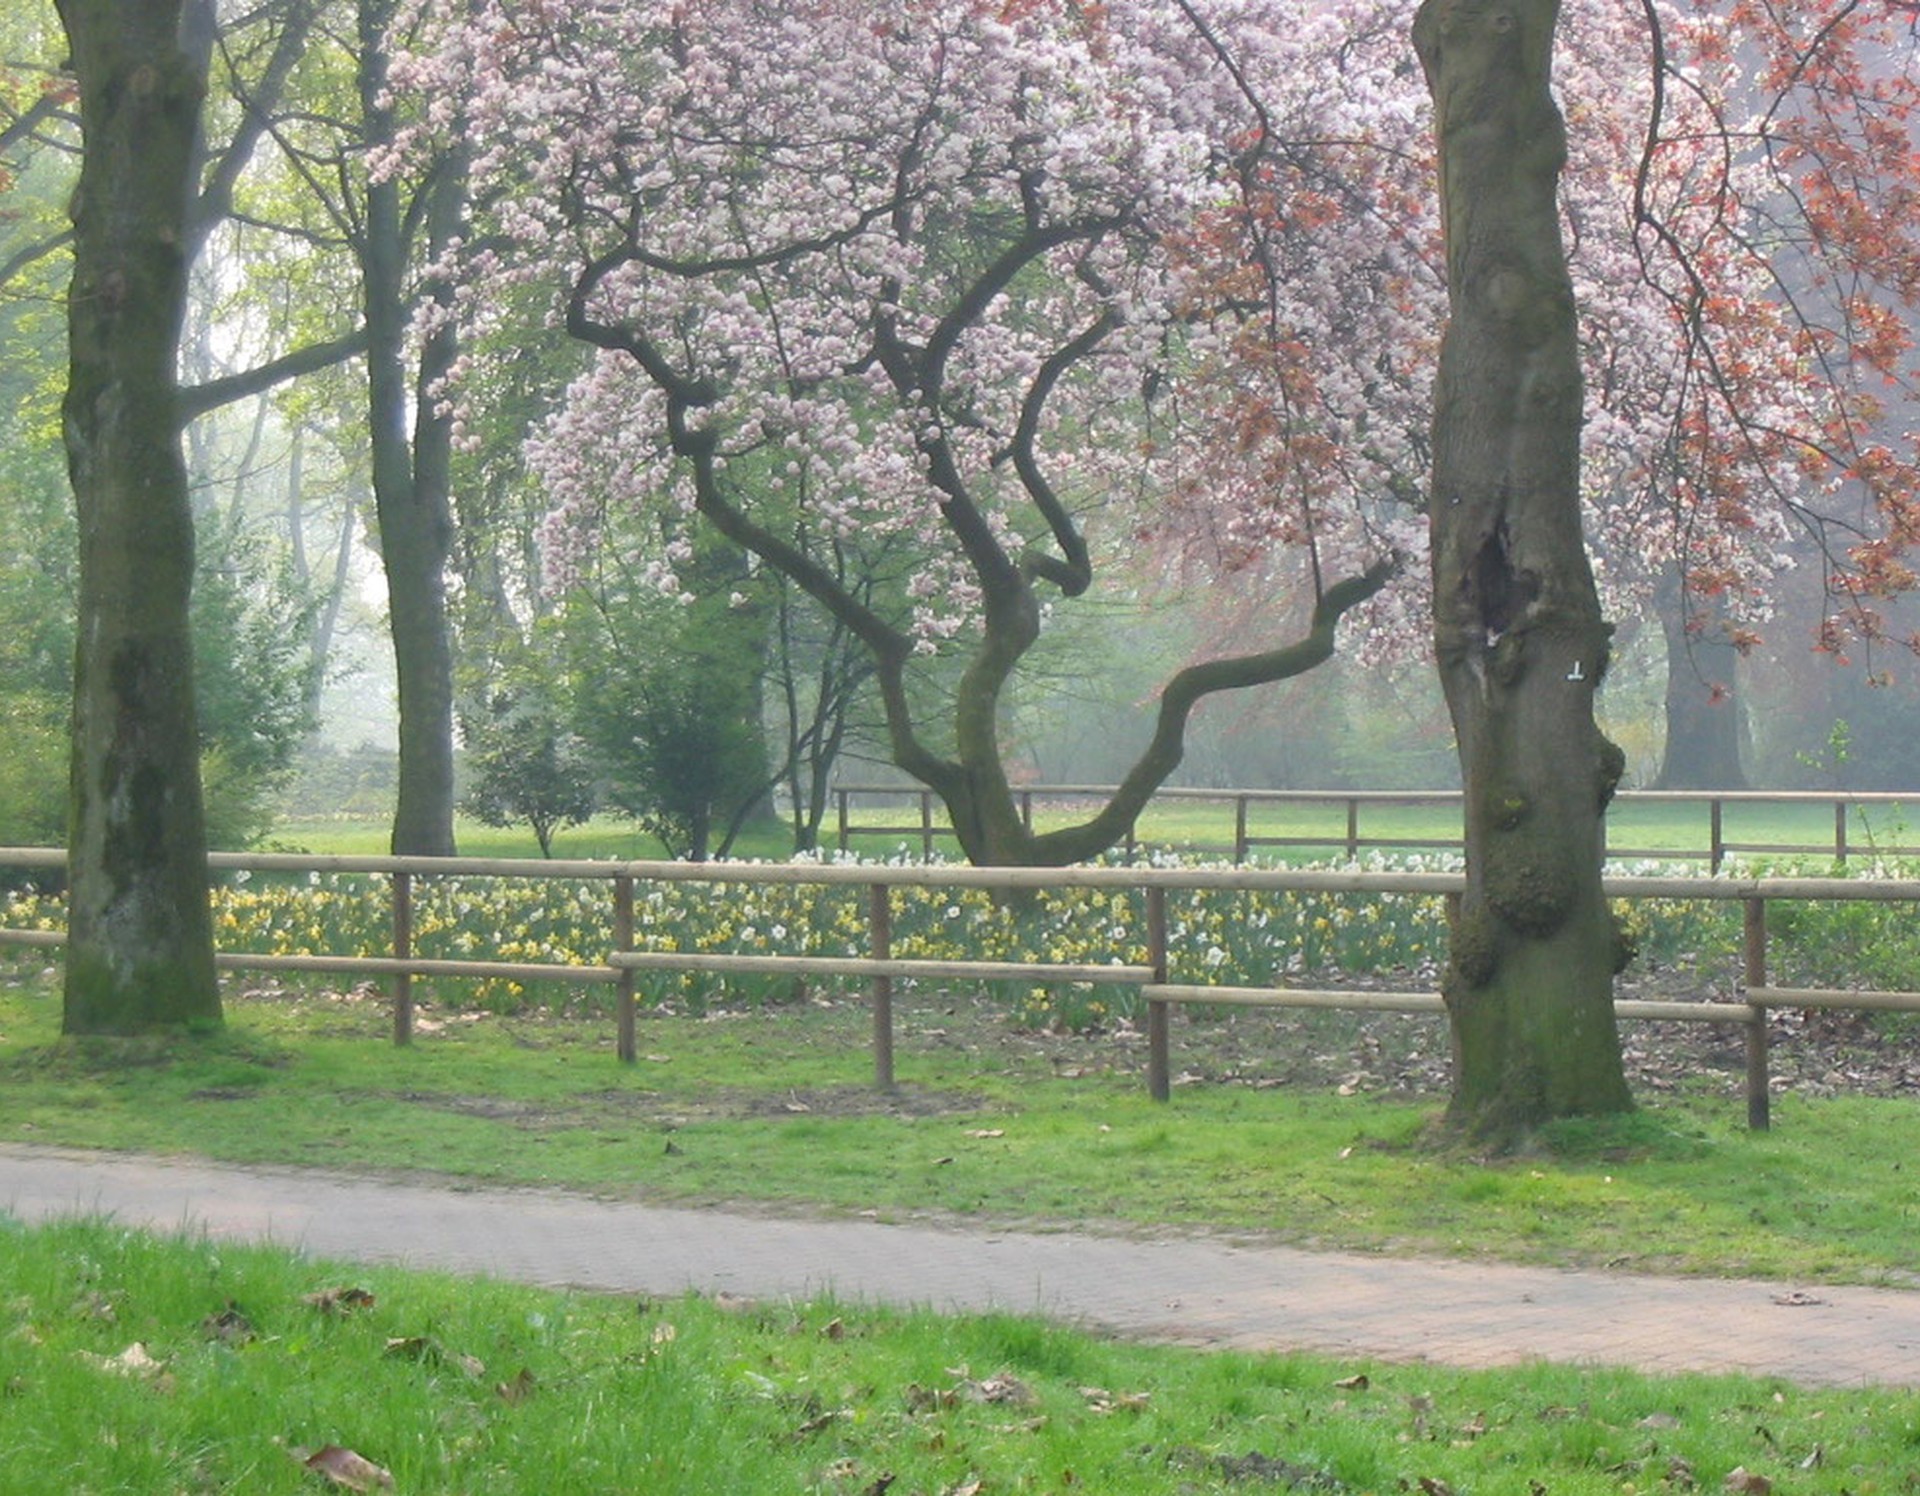 Weg mit Bäumen und Blumenbeeten am Rand im Stadtgarten.